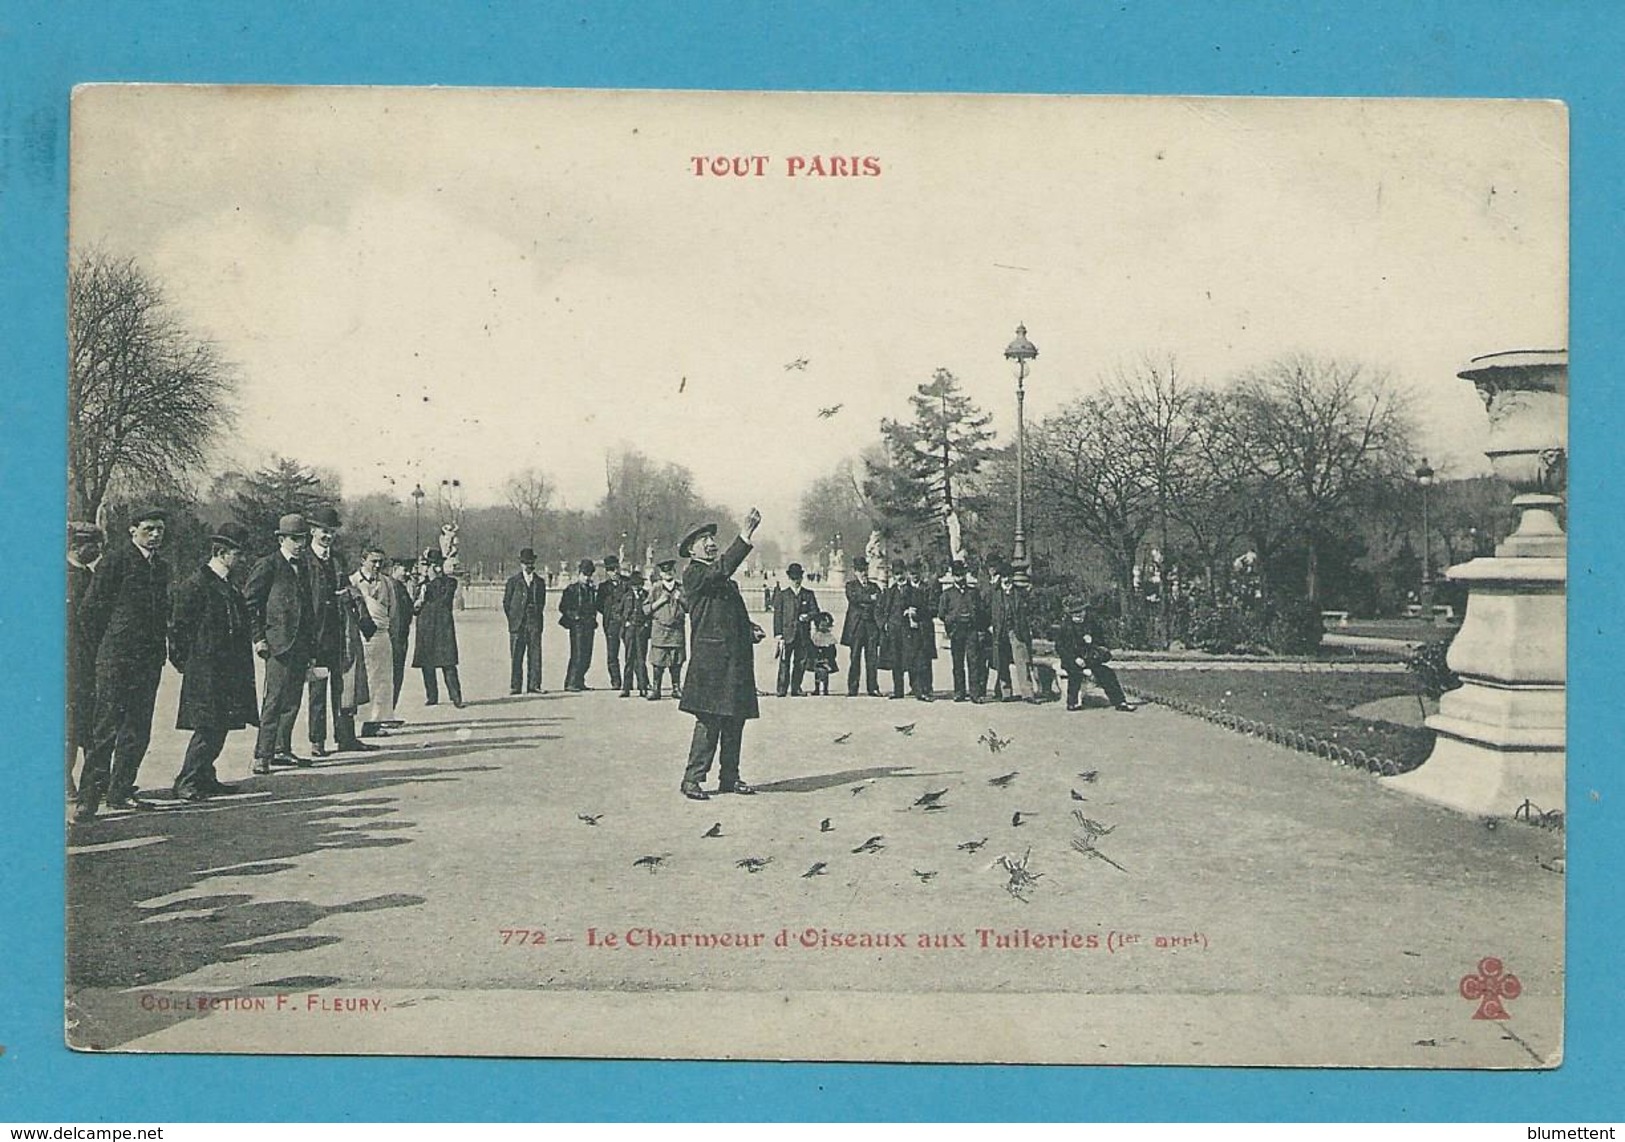 CPA TOUT PARIS 772 - Le Charmeur D'oiseaux Aux Tuileries (1er Arrt.) Edition FLEURY - District 01